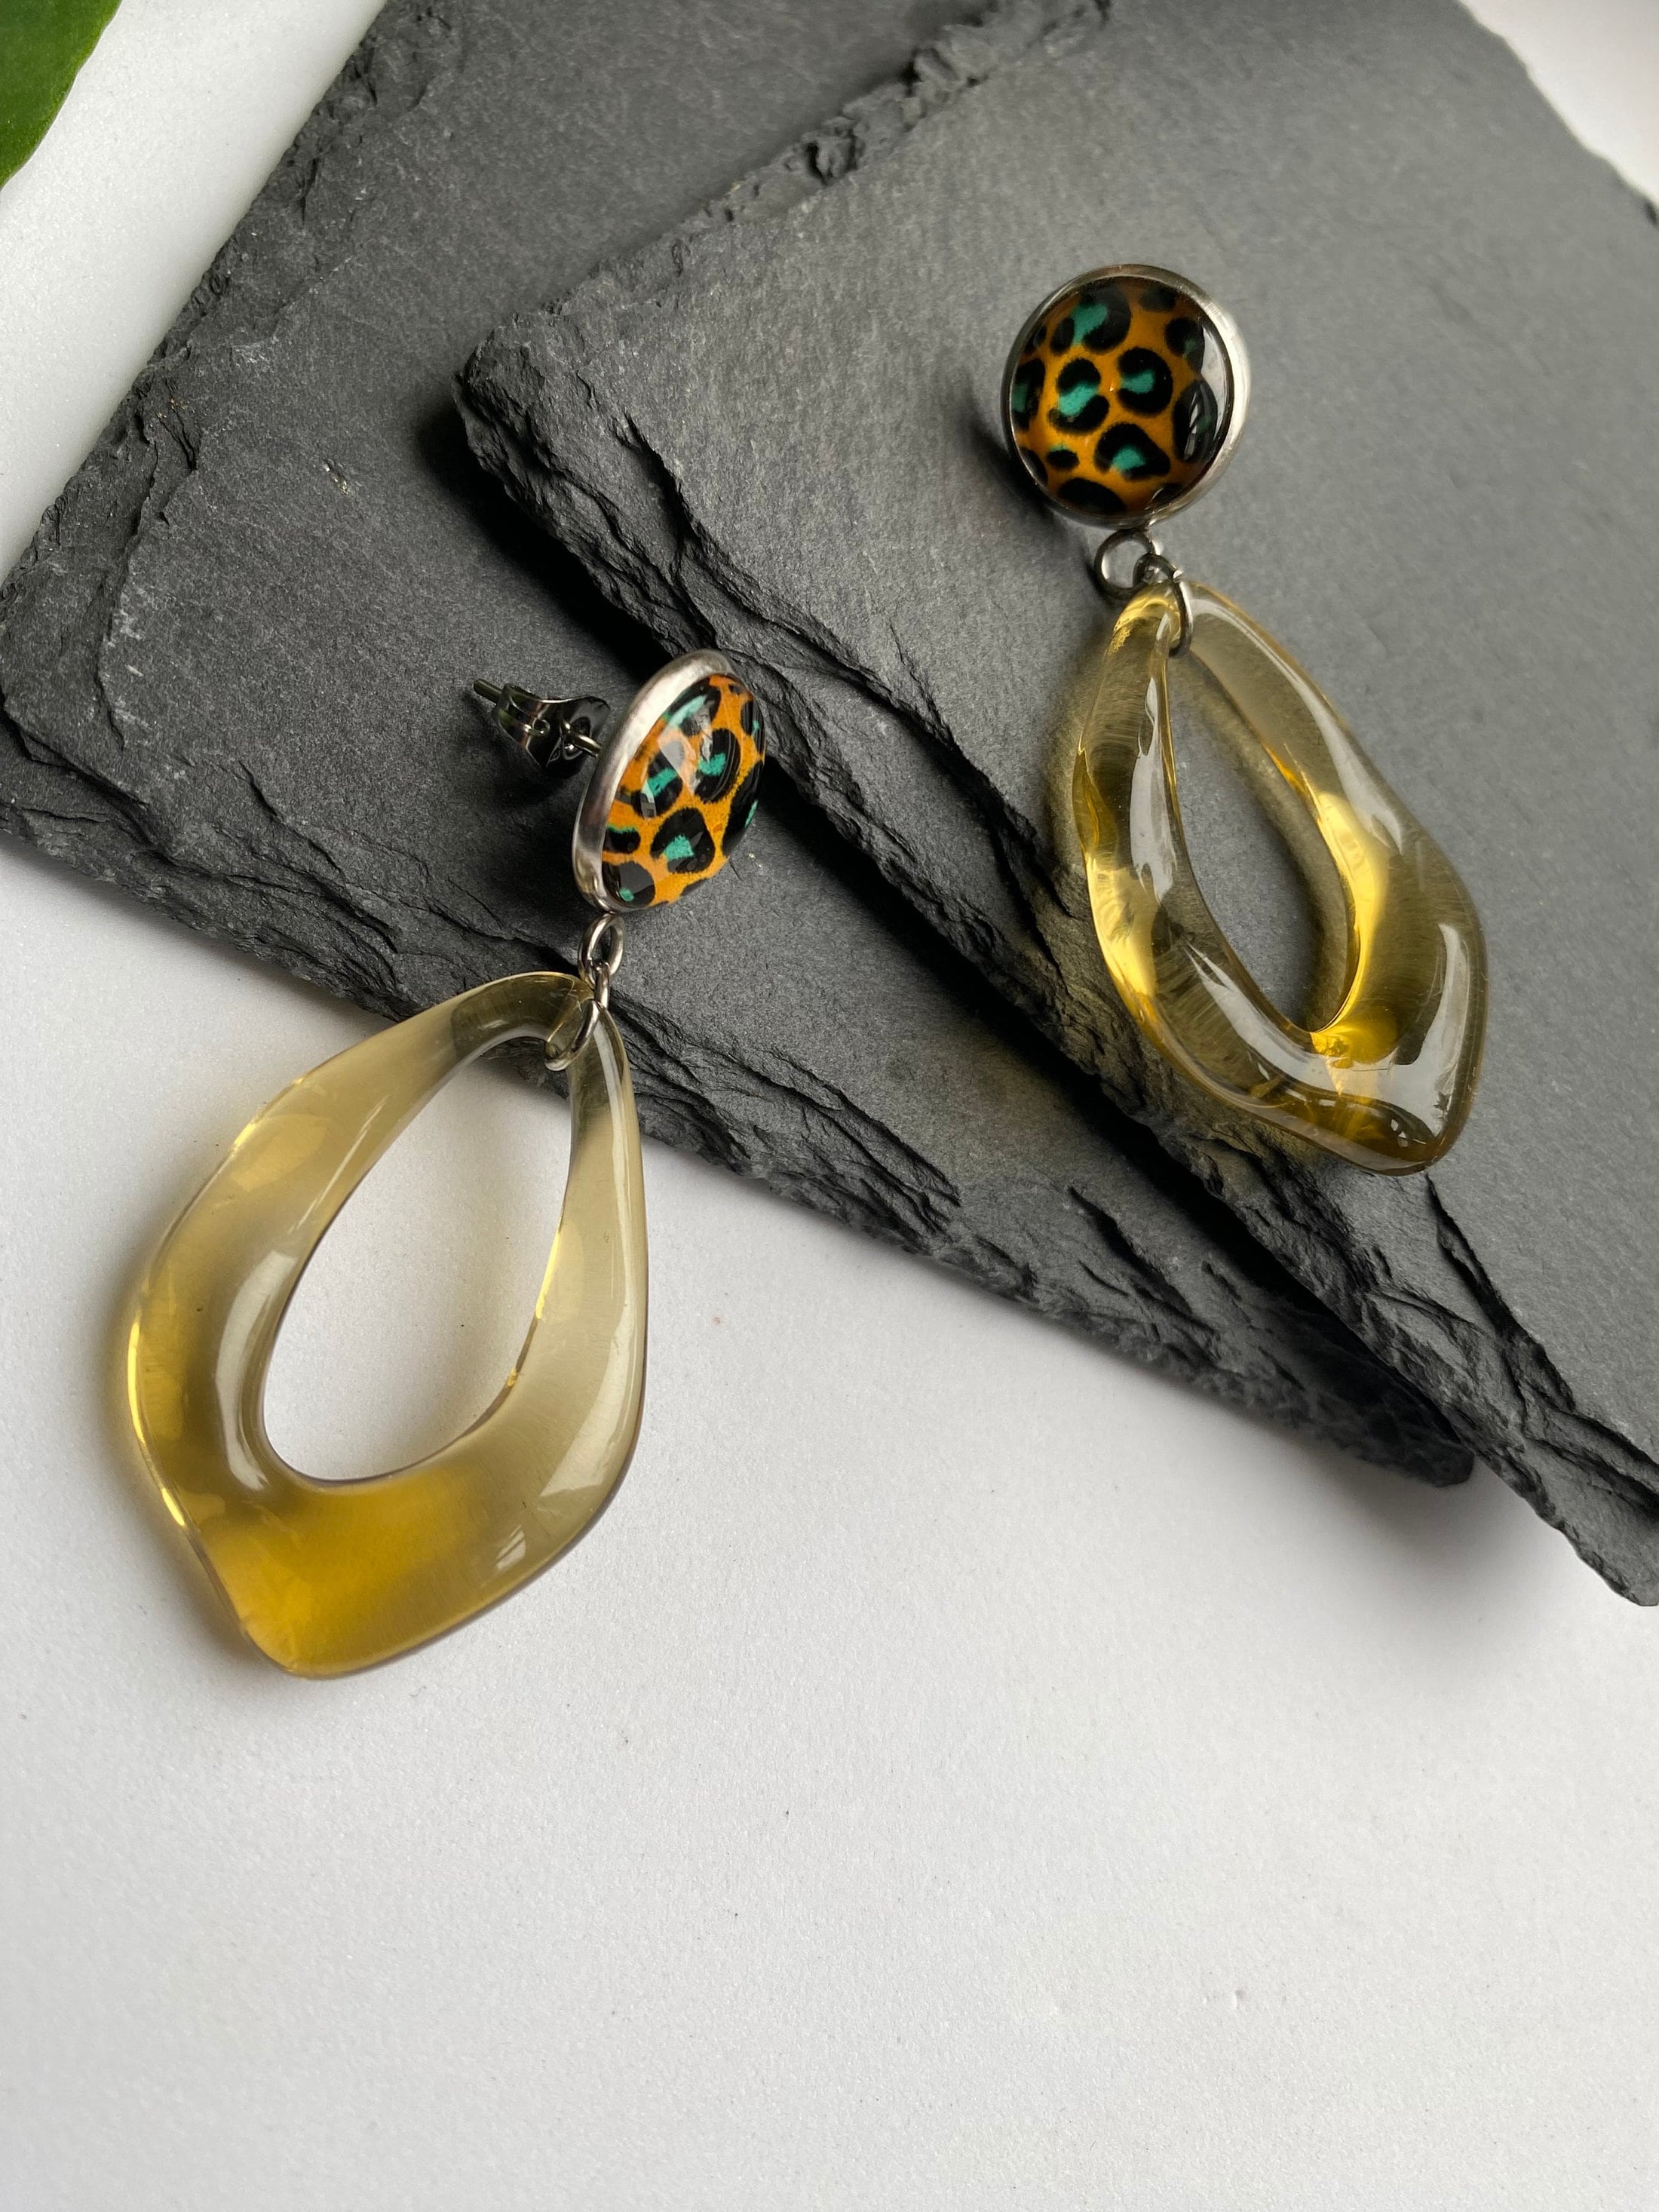 Leopard Print Cabochon Earrings, Yellow Geometric Drop Earrings, Acrylic Pushback Earrings for Pierced Ears, Summer Earrings for Ladies